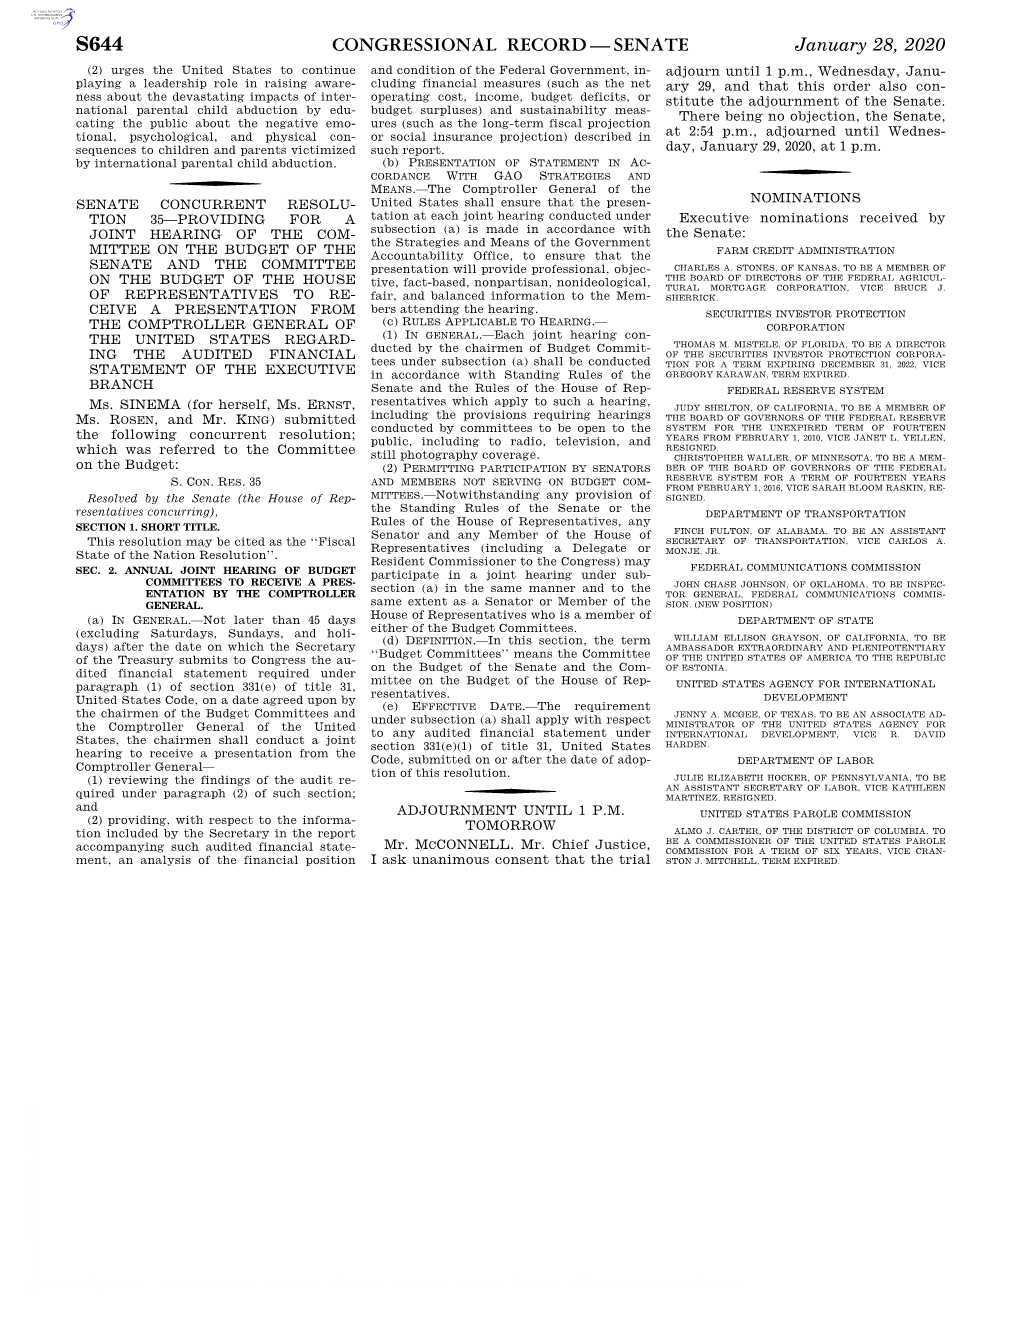 Congressional Record—Senate S644